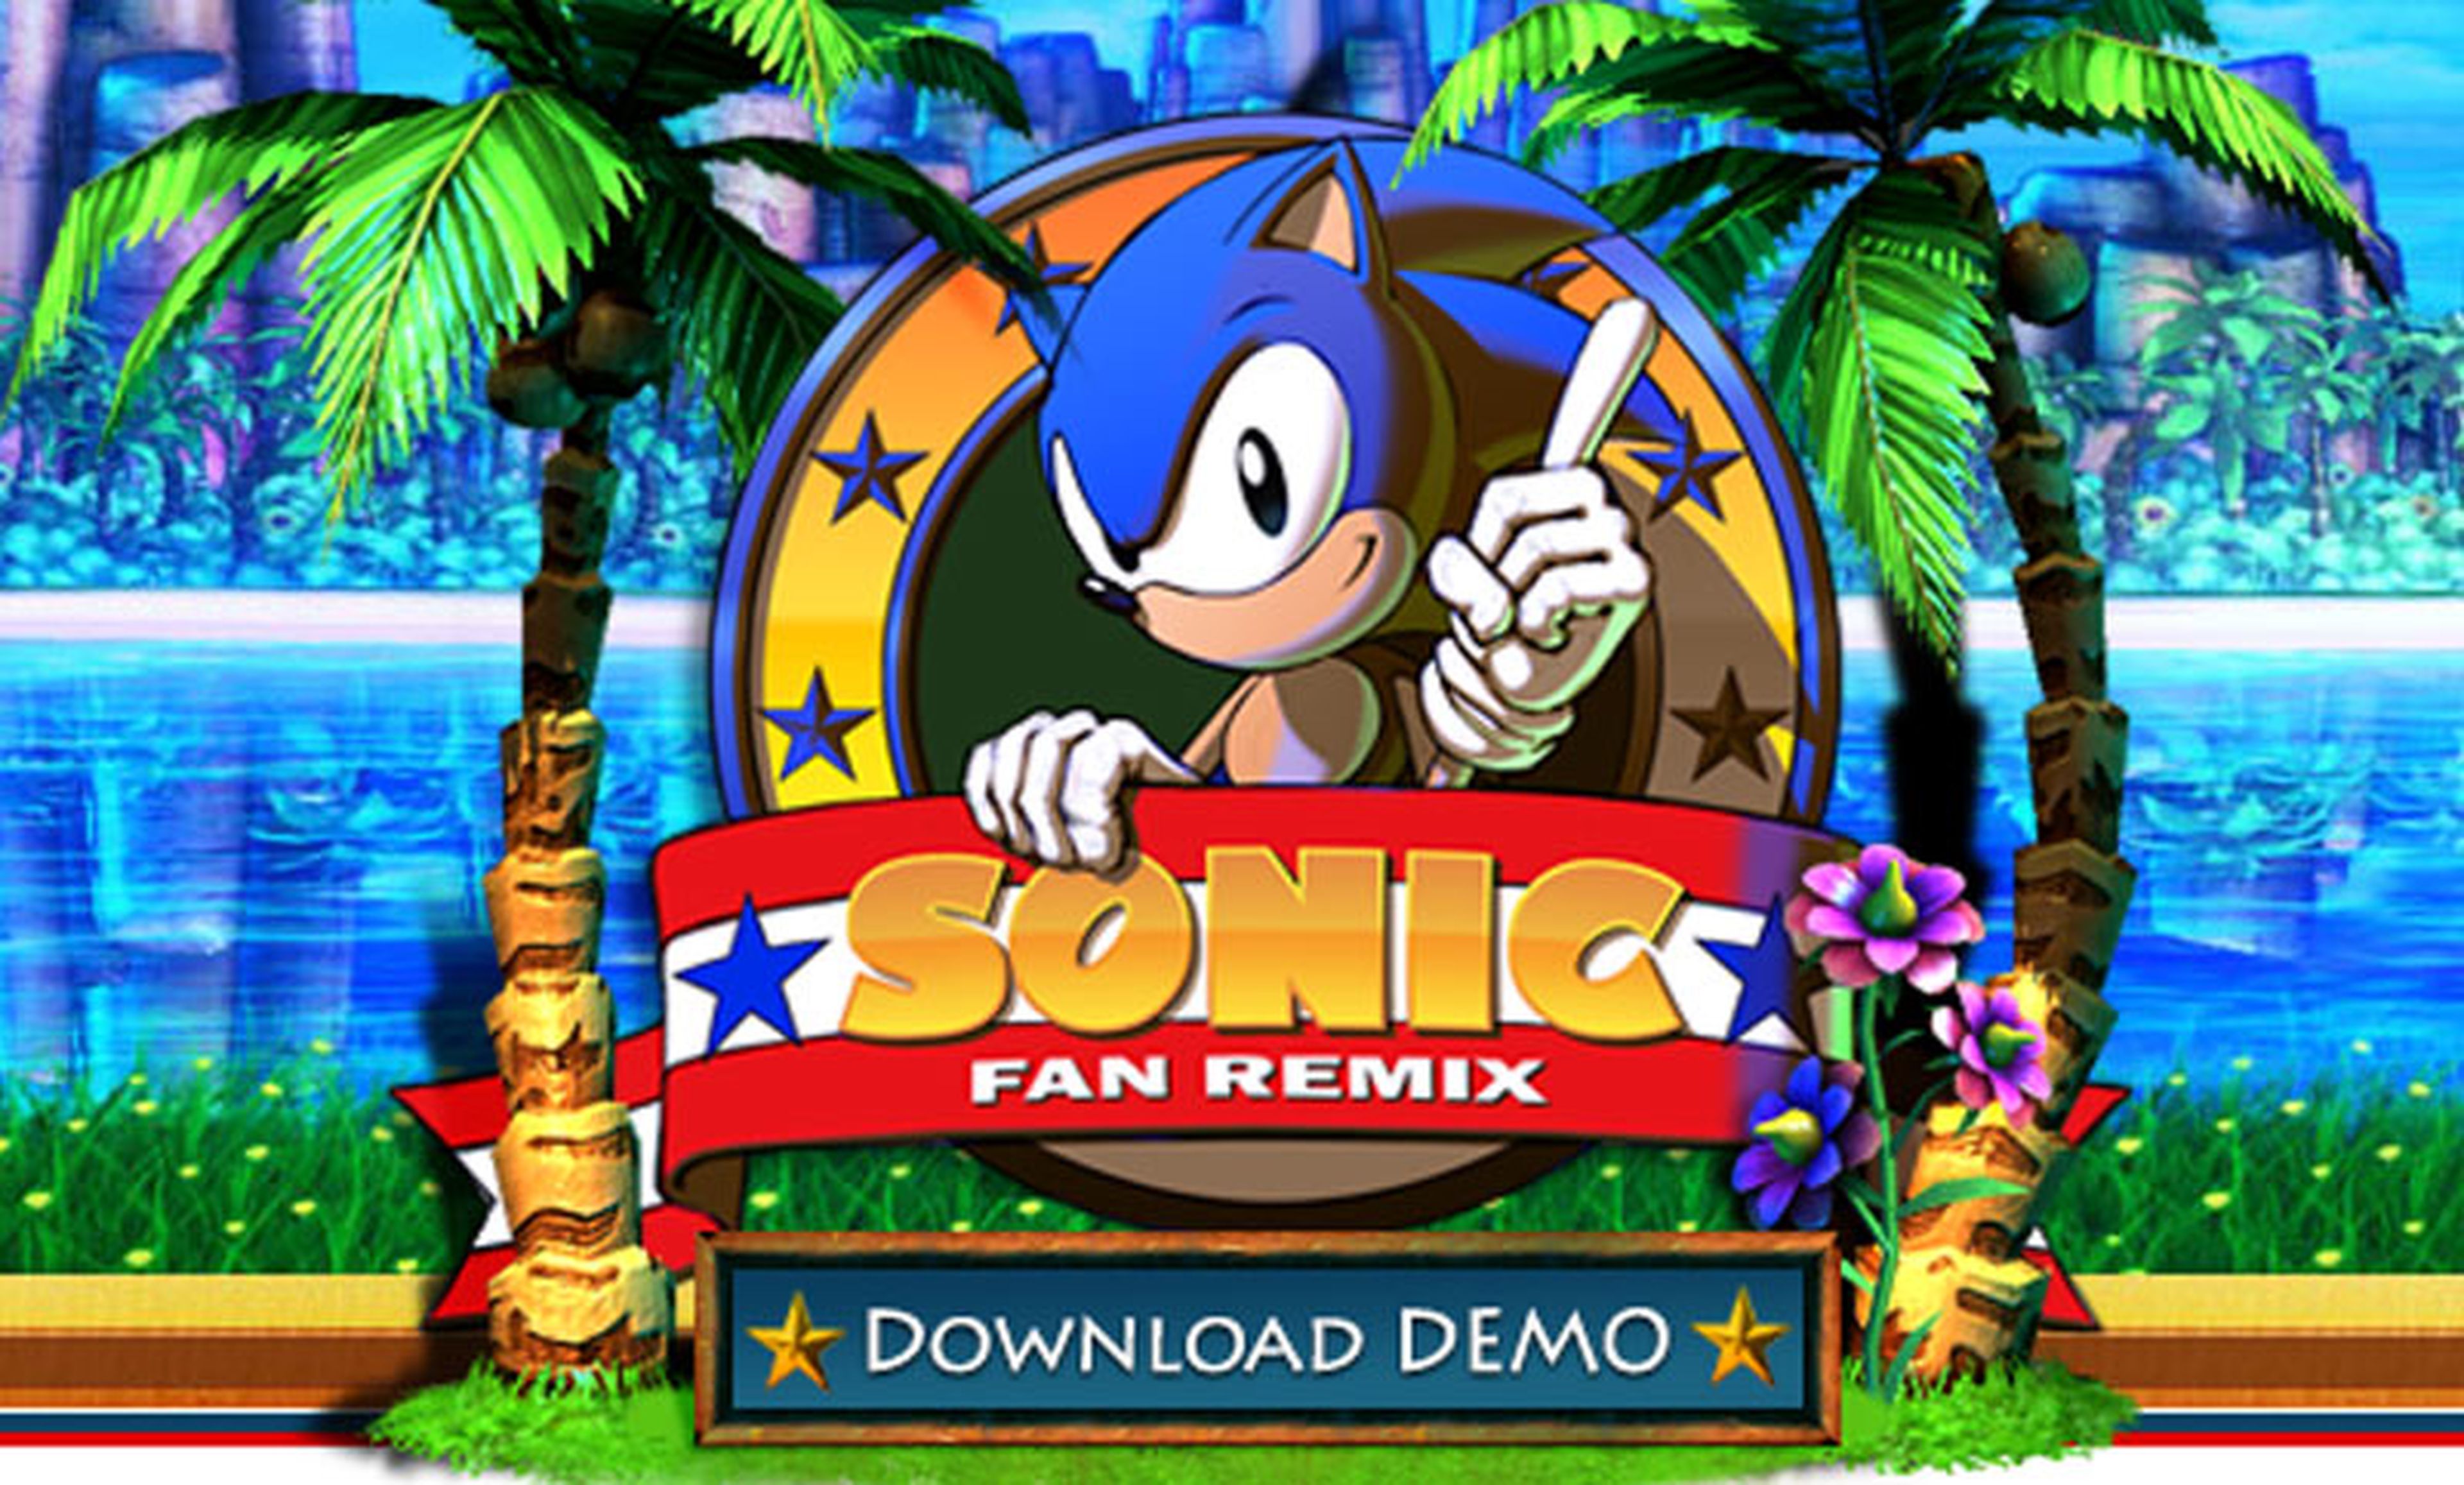 Sonic Fan Remix, demo disponible